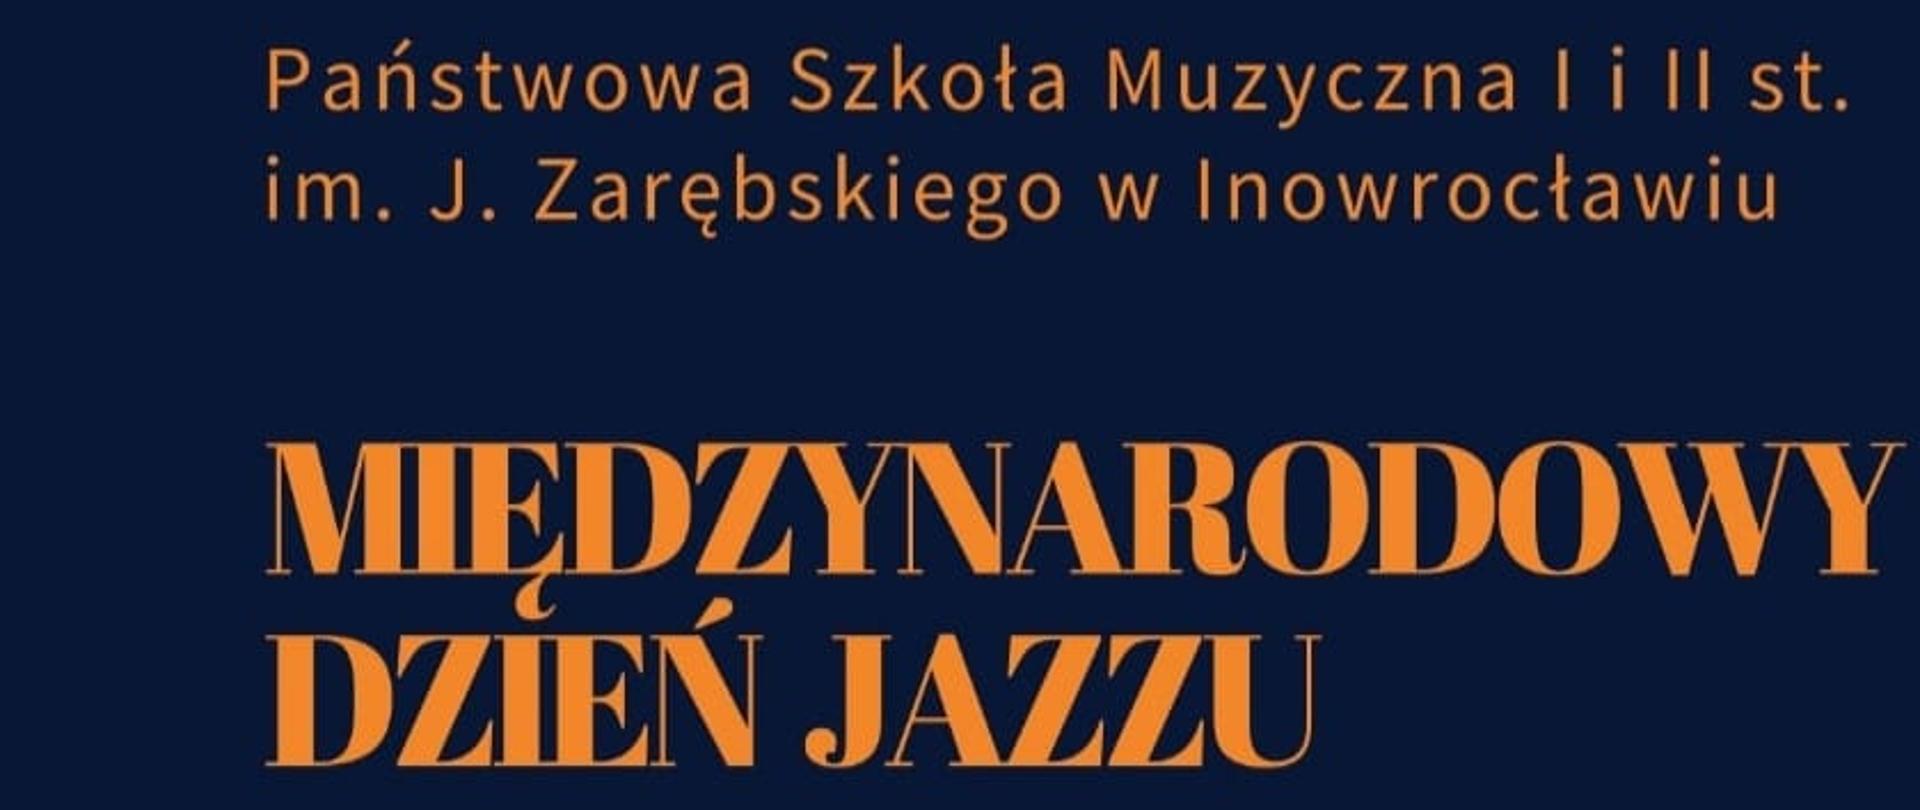 Międzynarodowy Dzień Jazzu 2022 plakat . Na granatowym tle informacja o wydarzeniu. Z lewej strony rysunek saksofonu.